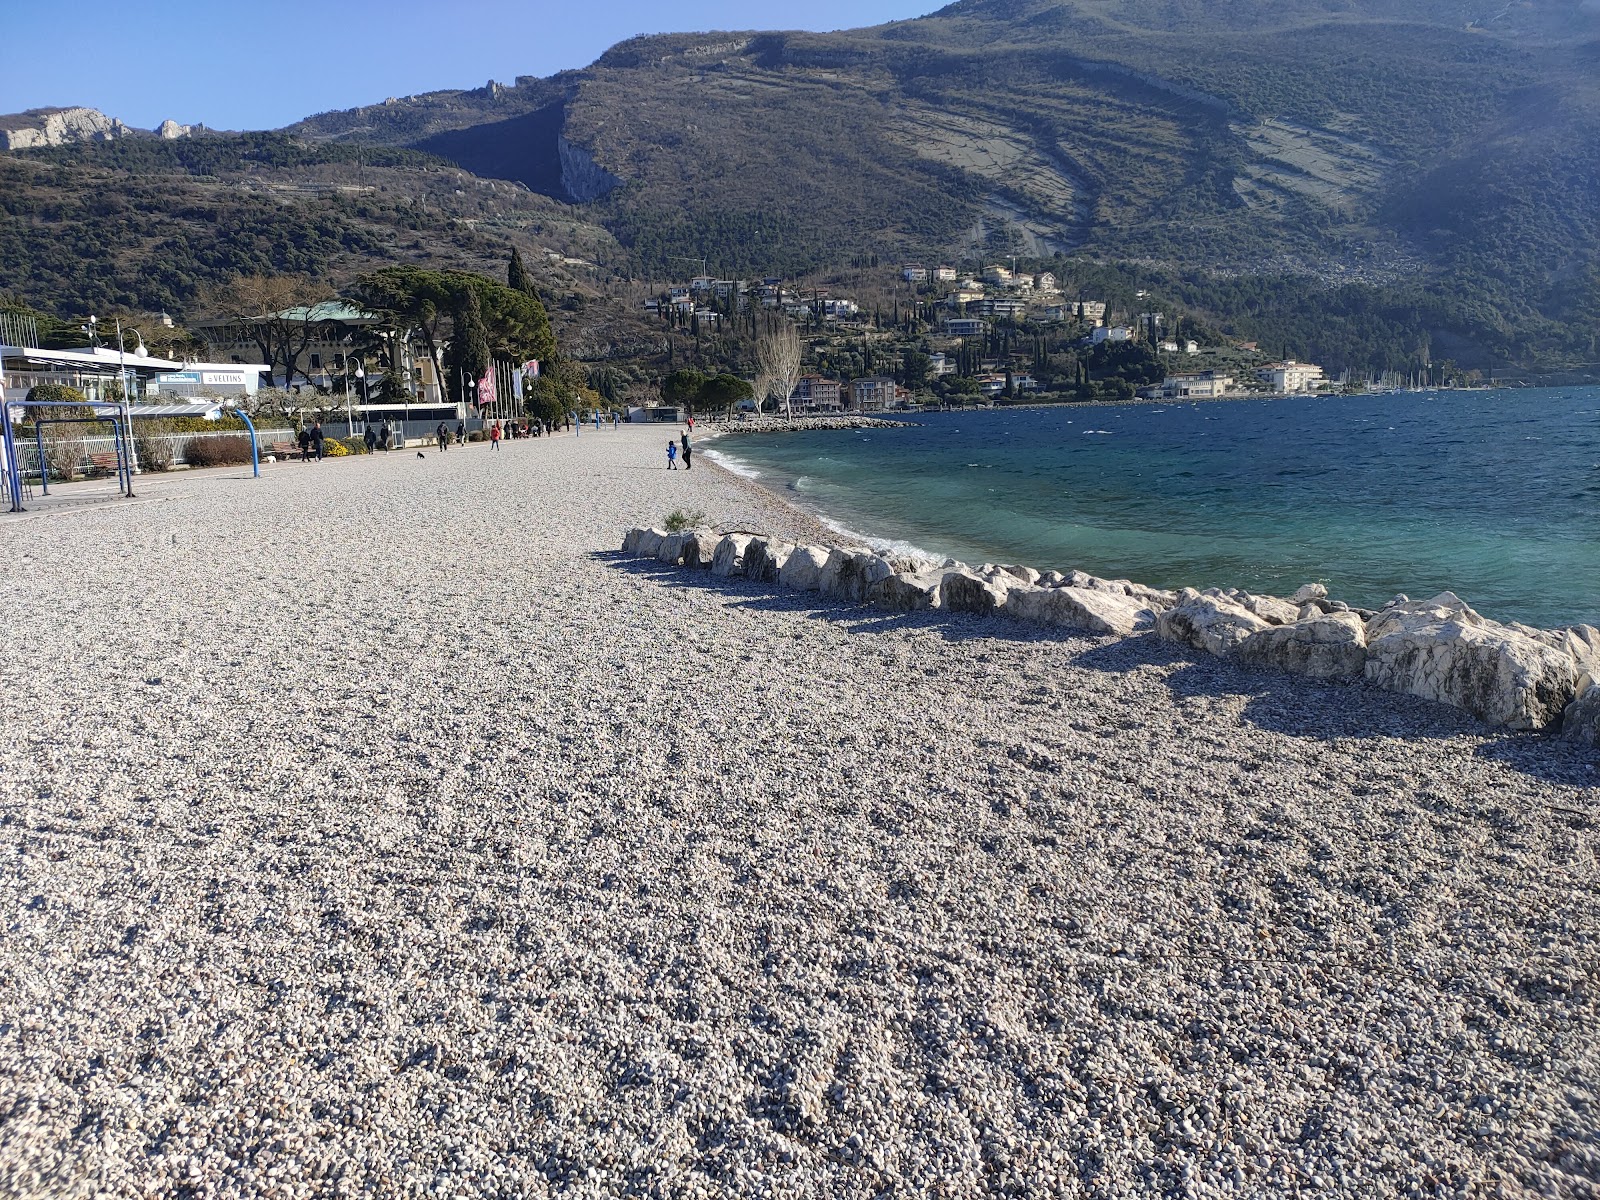 Foto von Spiaggia Lungolago und seine wunderschöne Landschaft